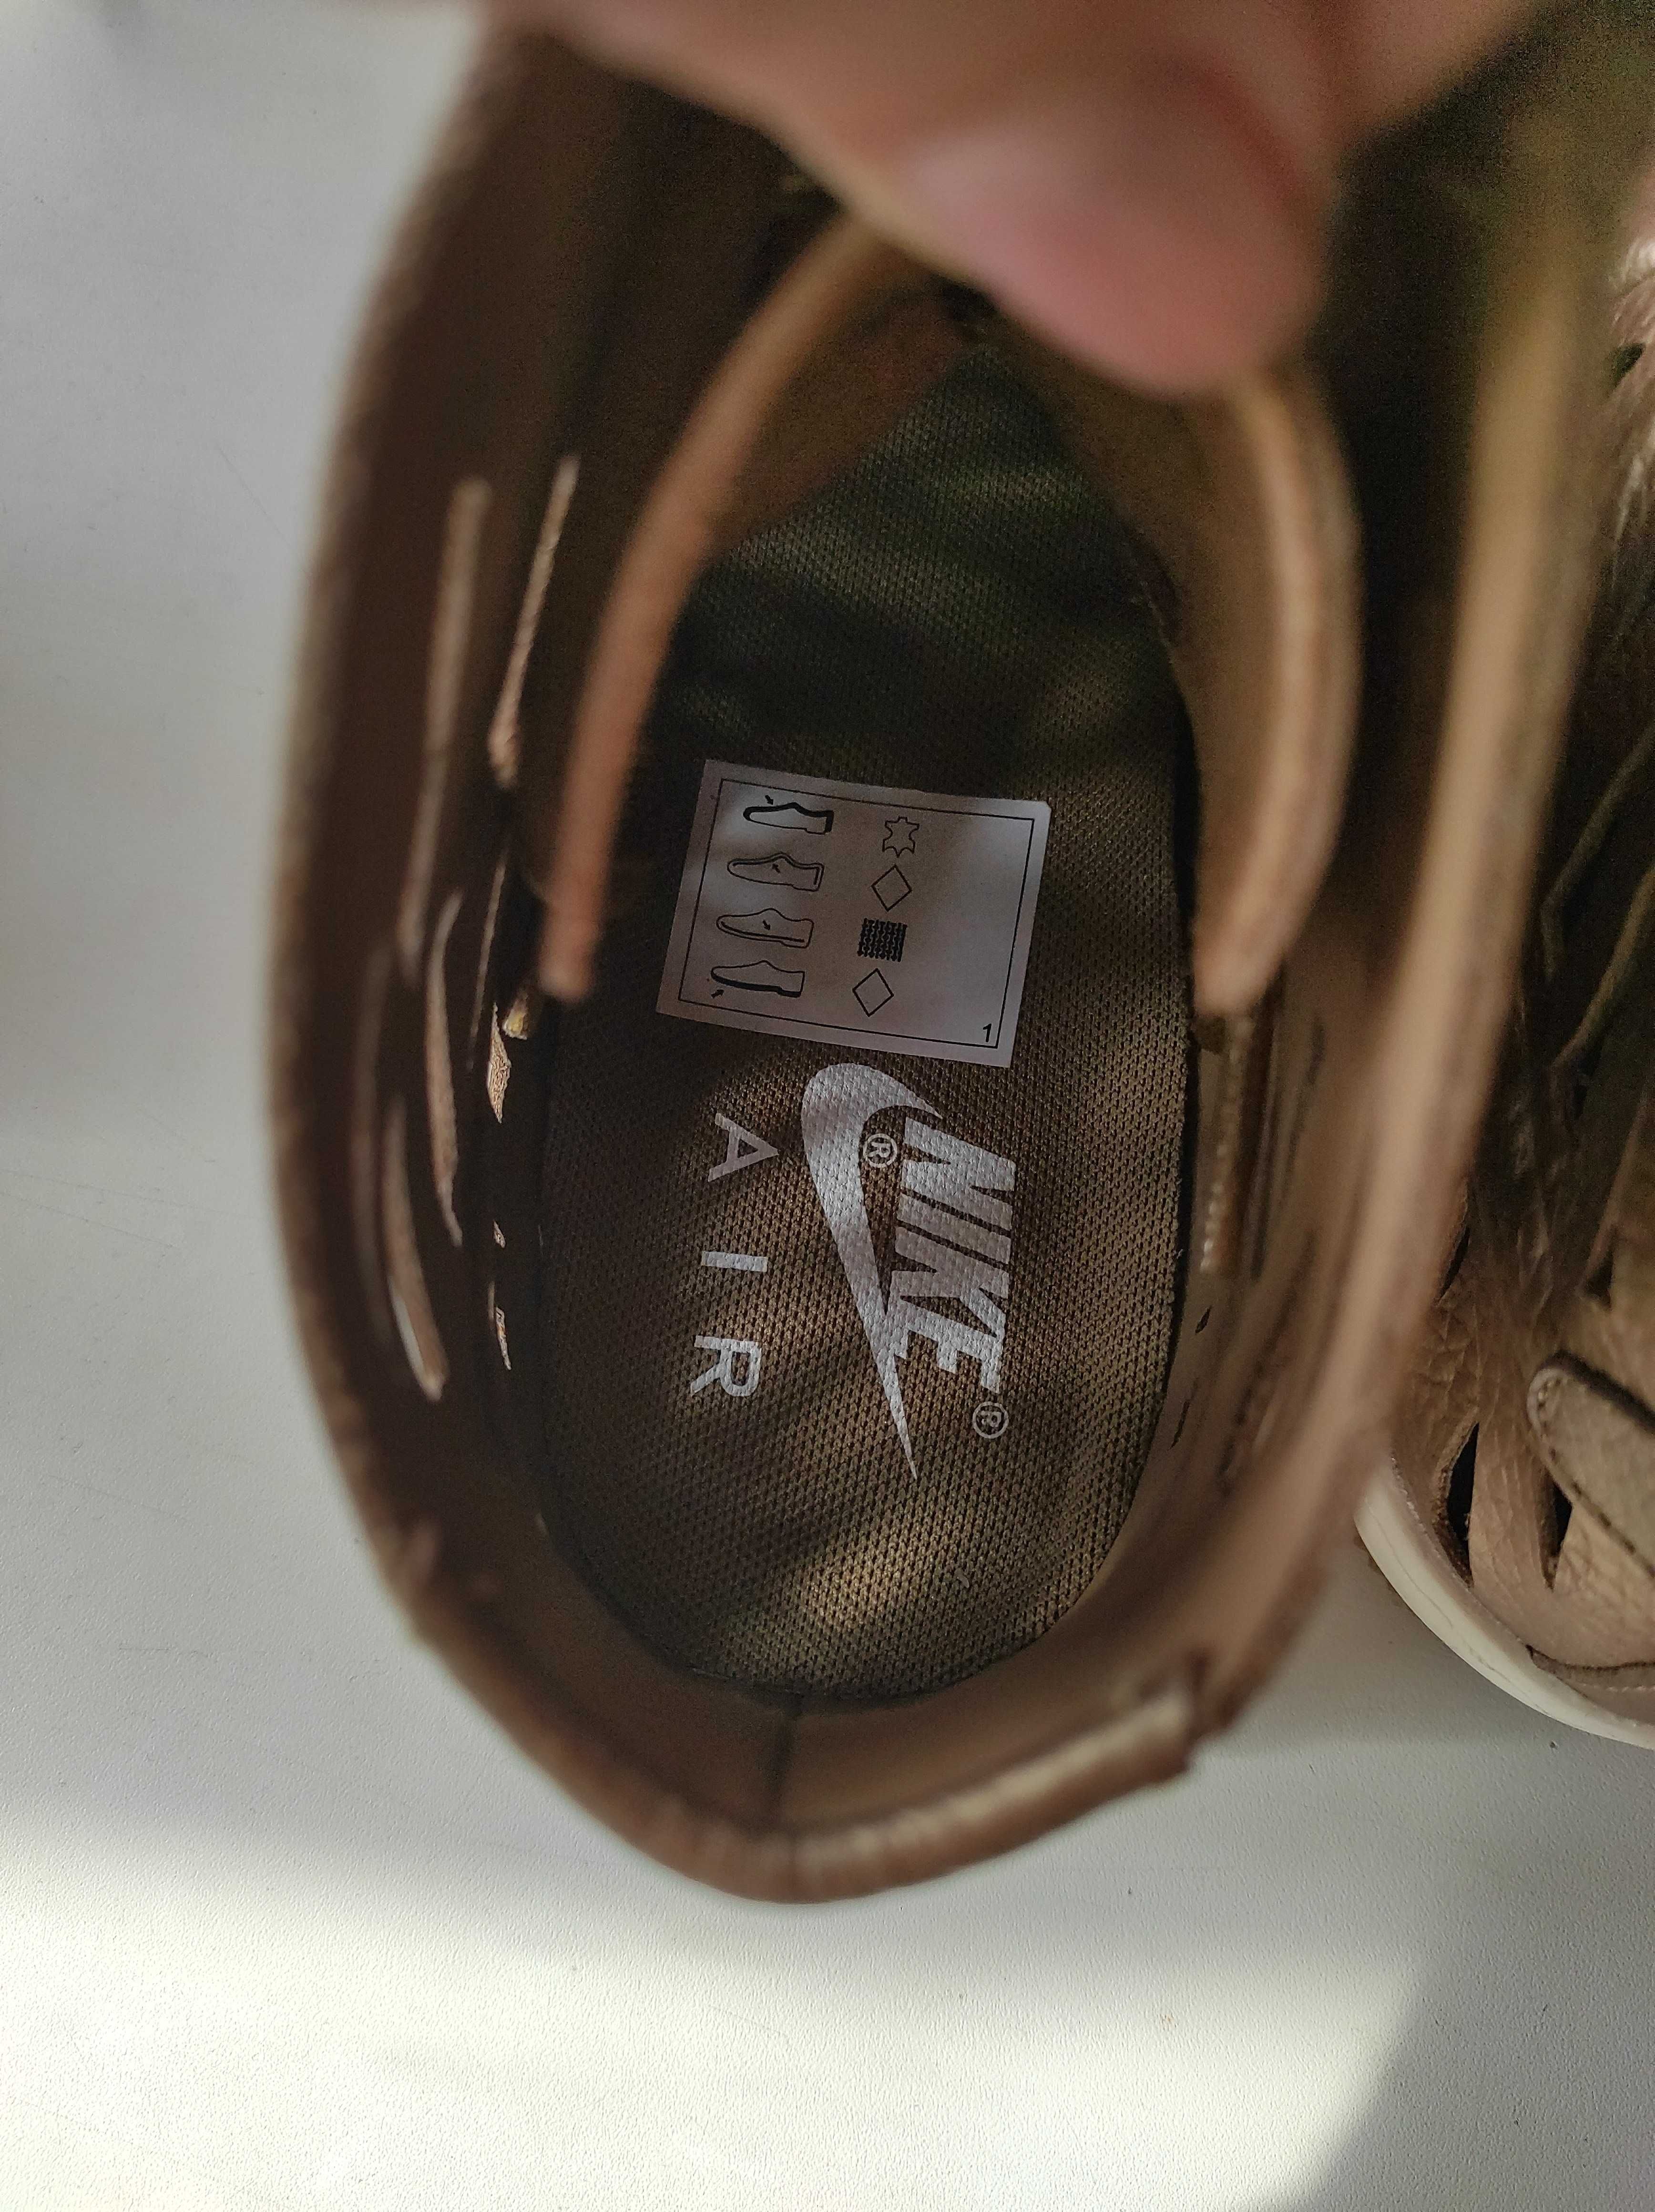 Новые летние кроссовки Nike Air Force оригинал кожа хайтопы найки найк